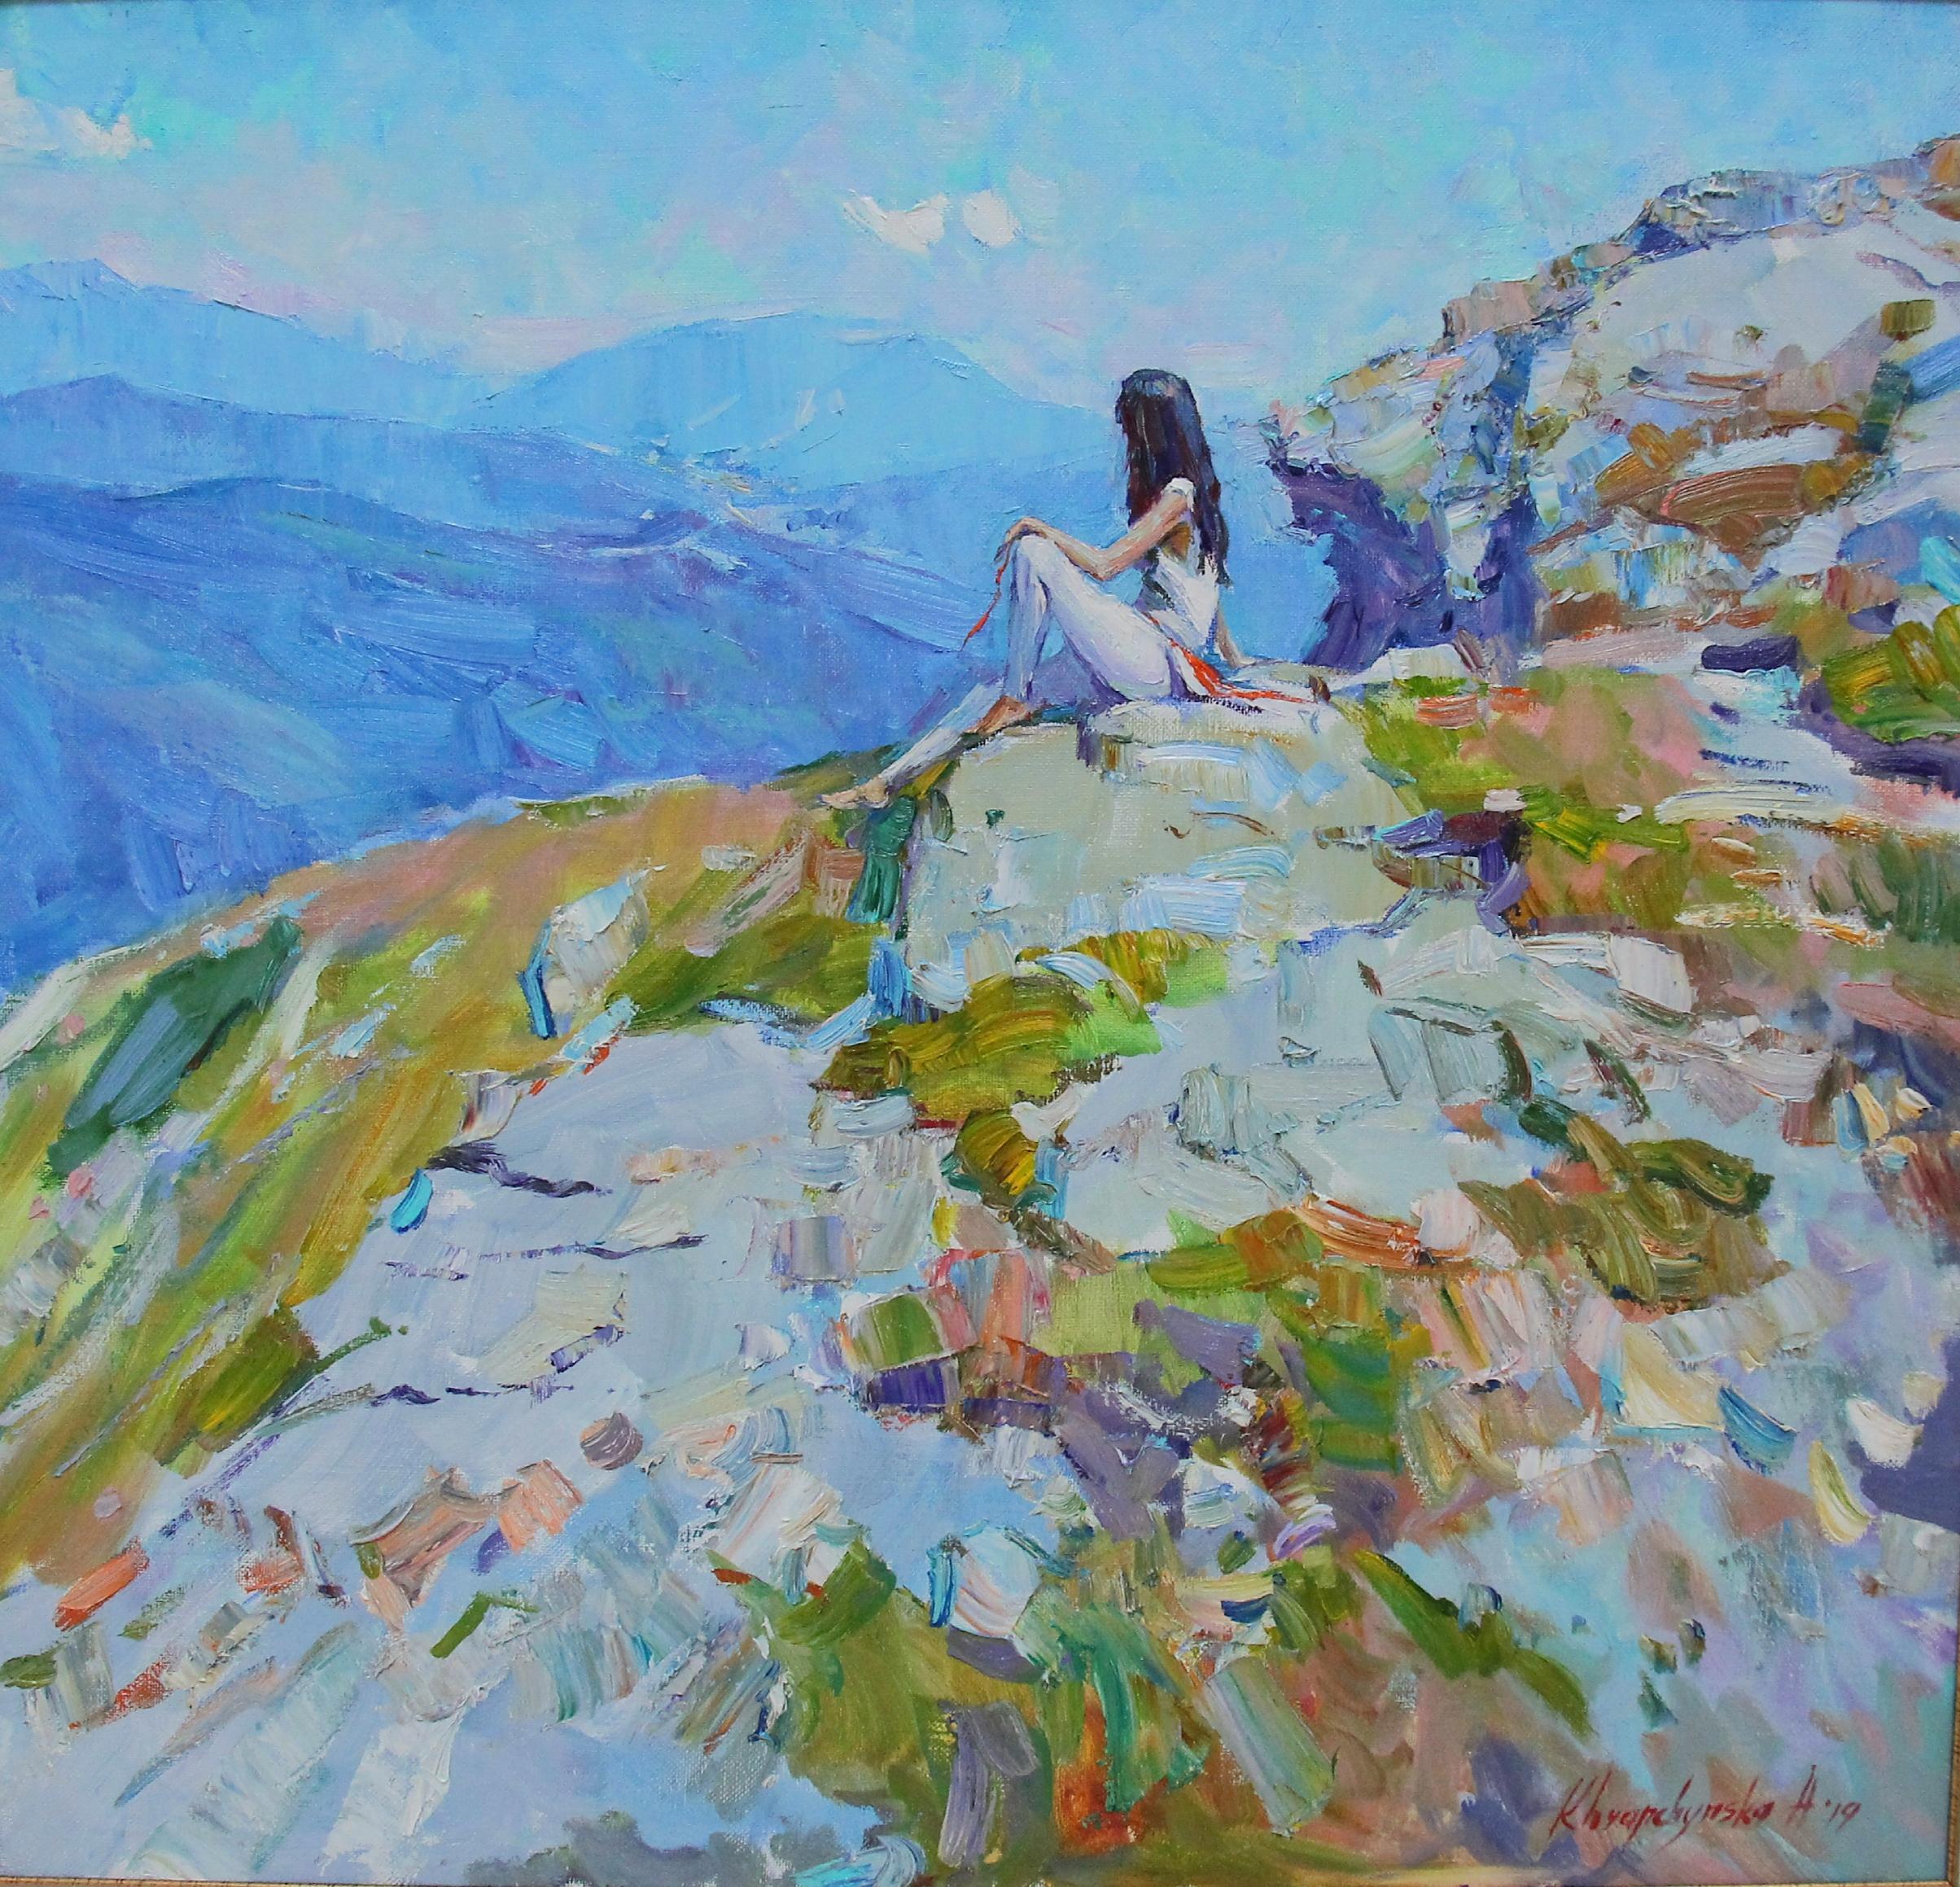 Alina Khrapchynska Figurative Painting – Edelweiss  Landschaft, lgemlde in den Farben Blau, Grn, Wei, Grau und Elfenbein